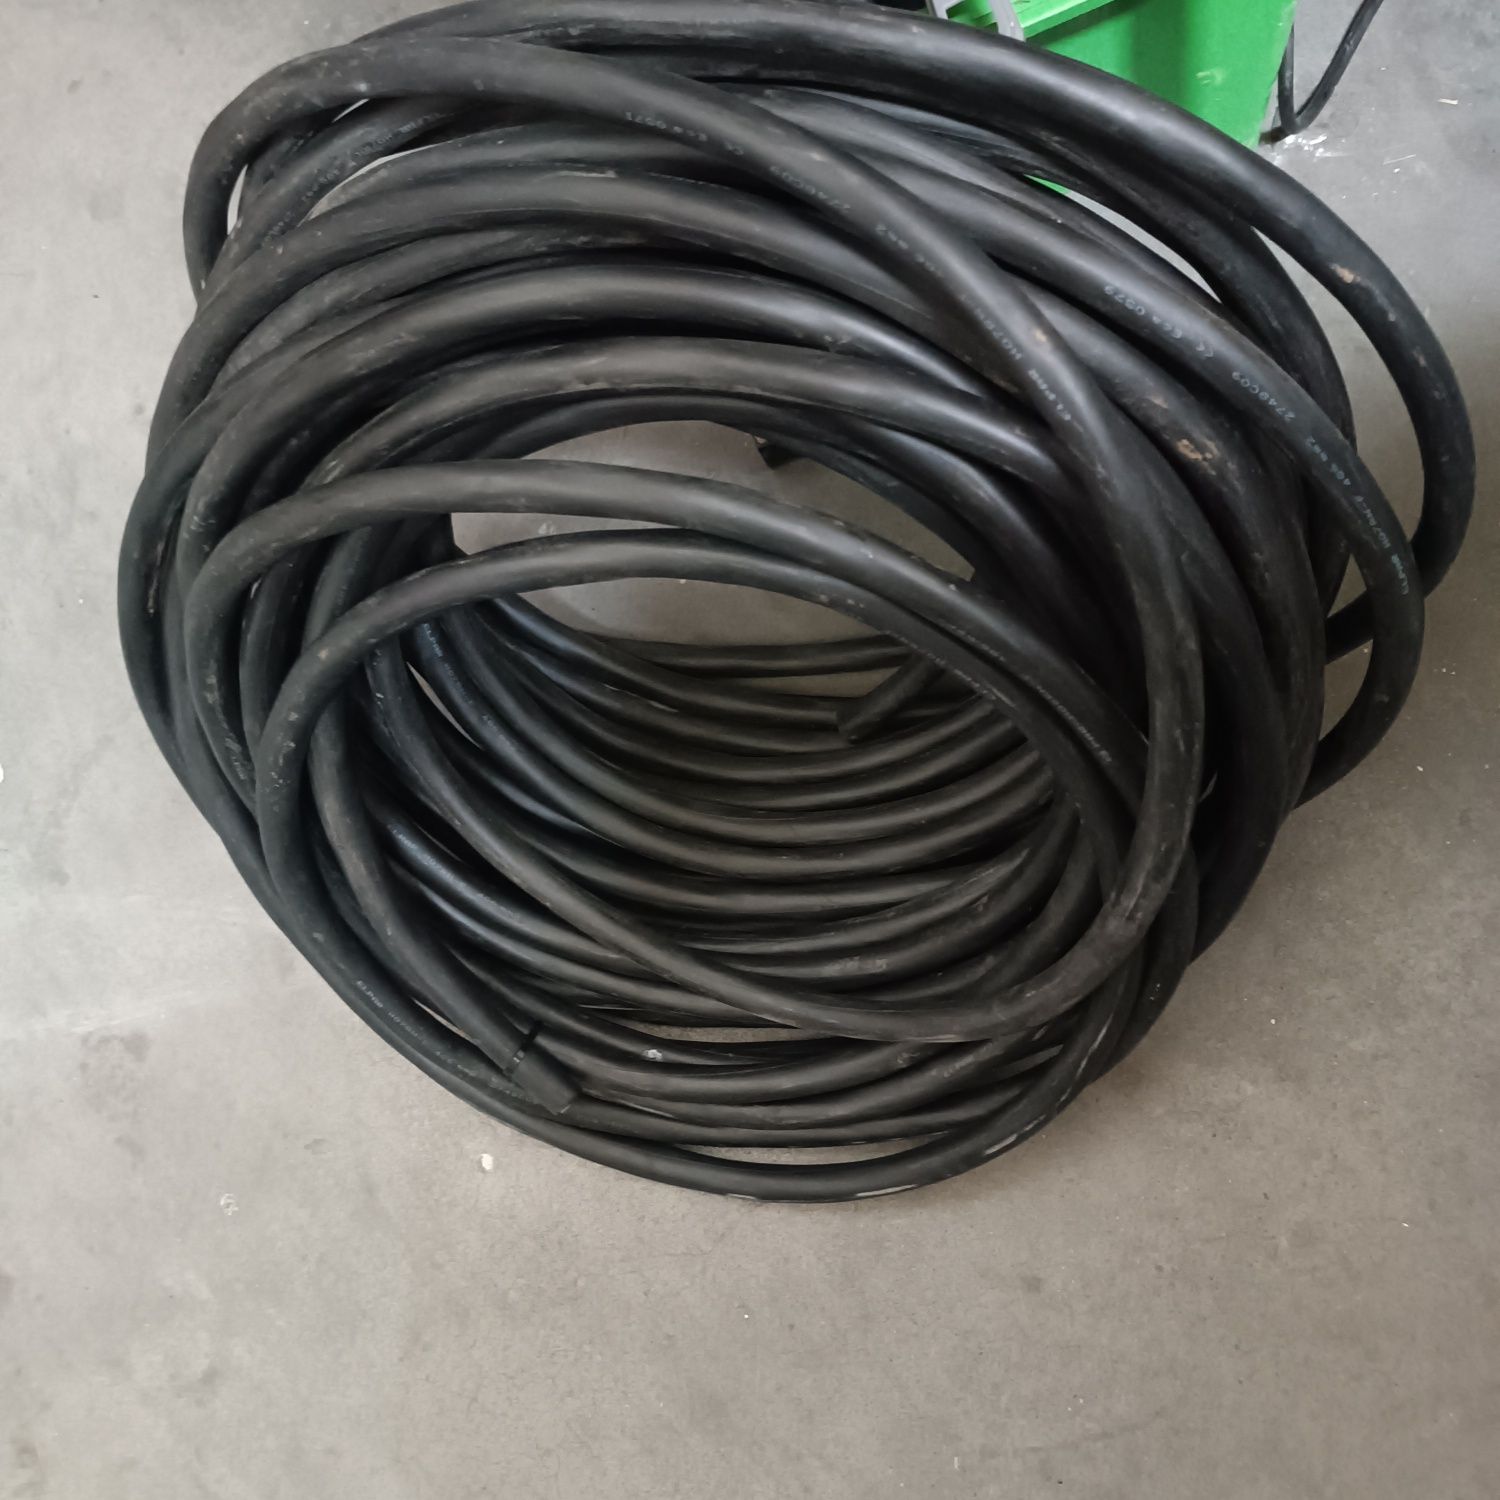 Przewód, kabel elektryczny H07RN-F 4x6 450/750V. TANIO